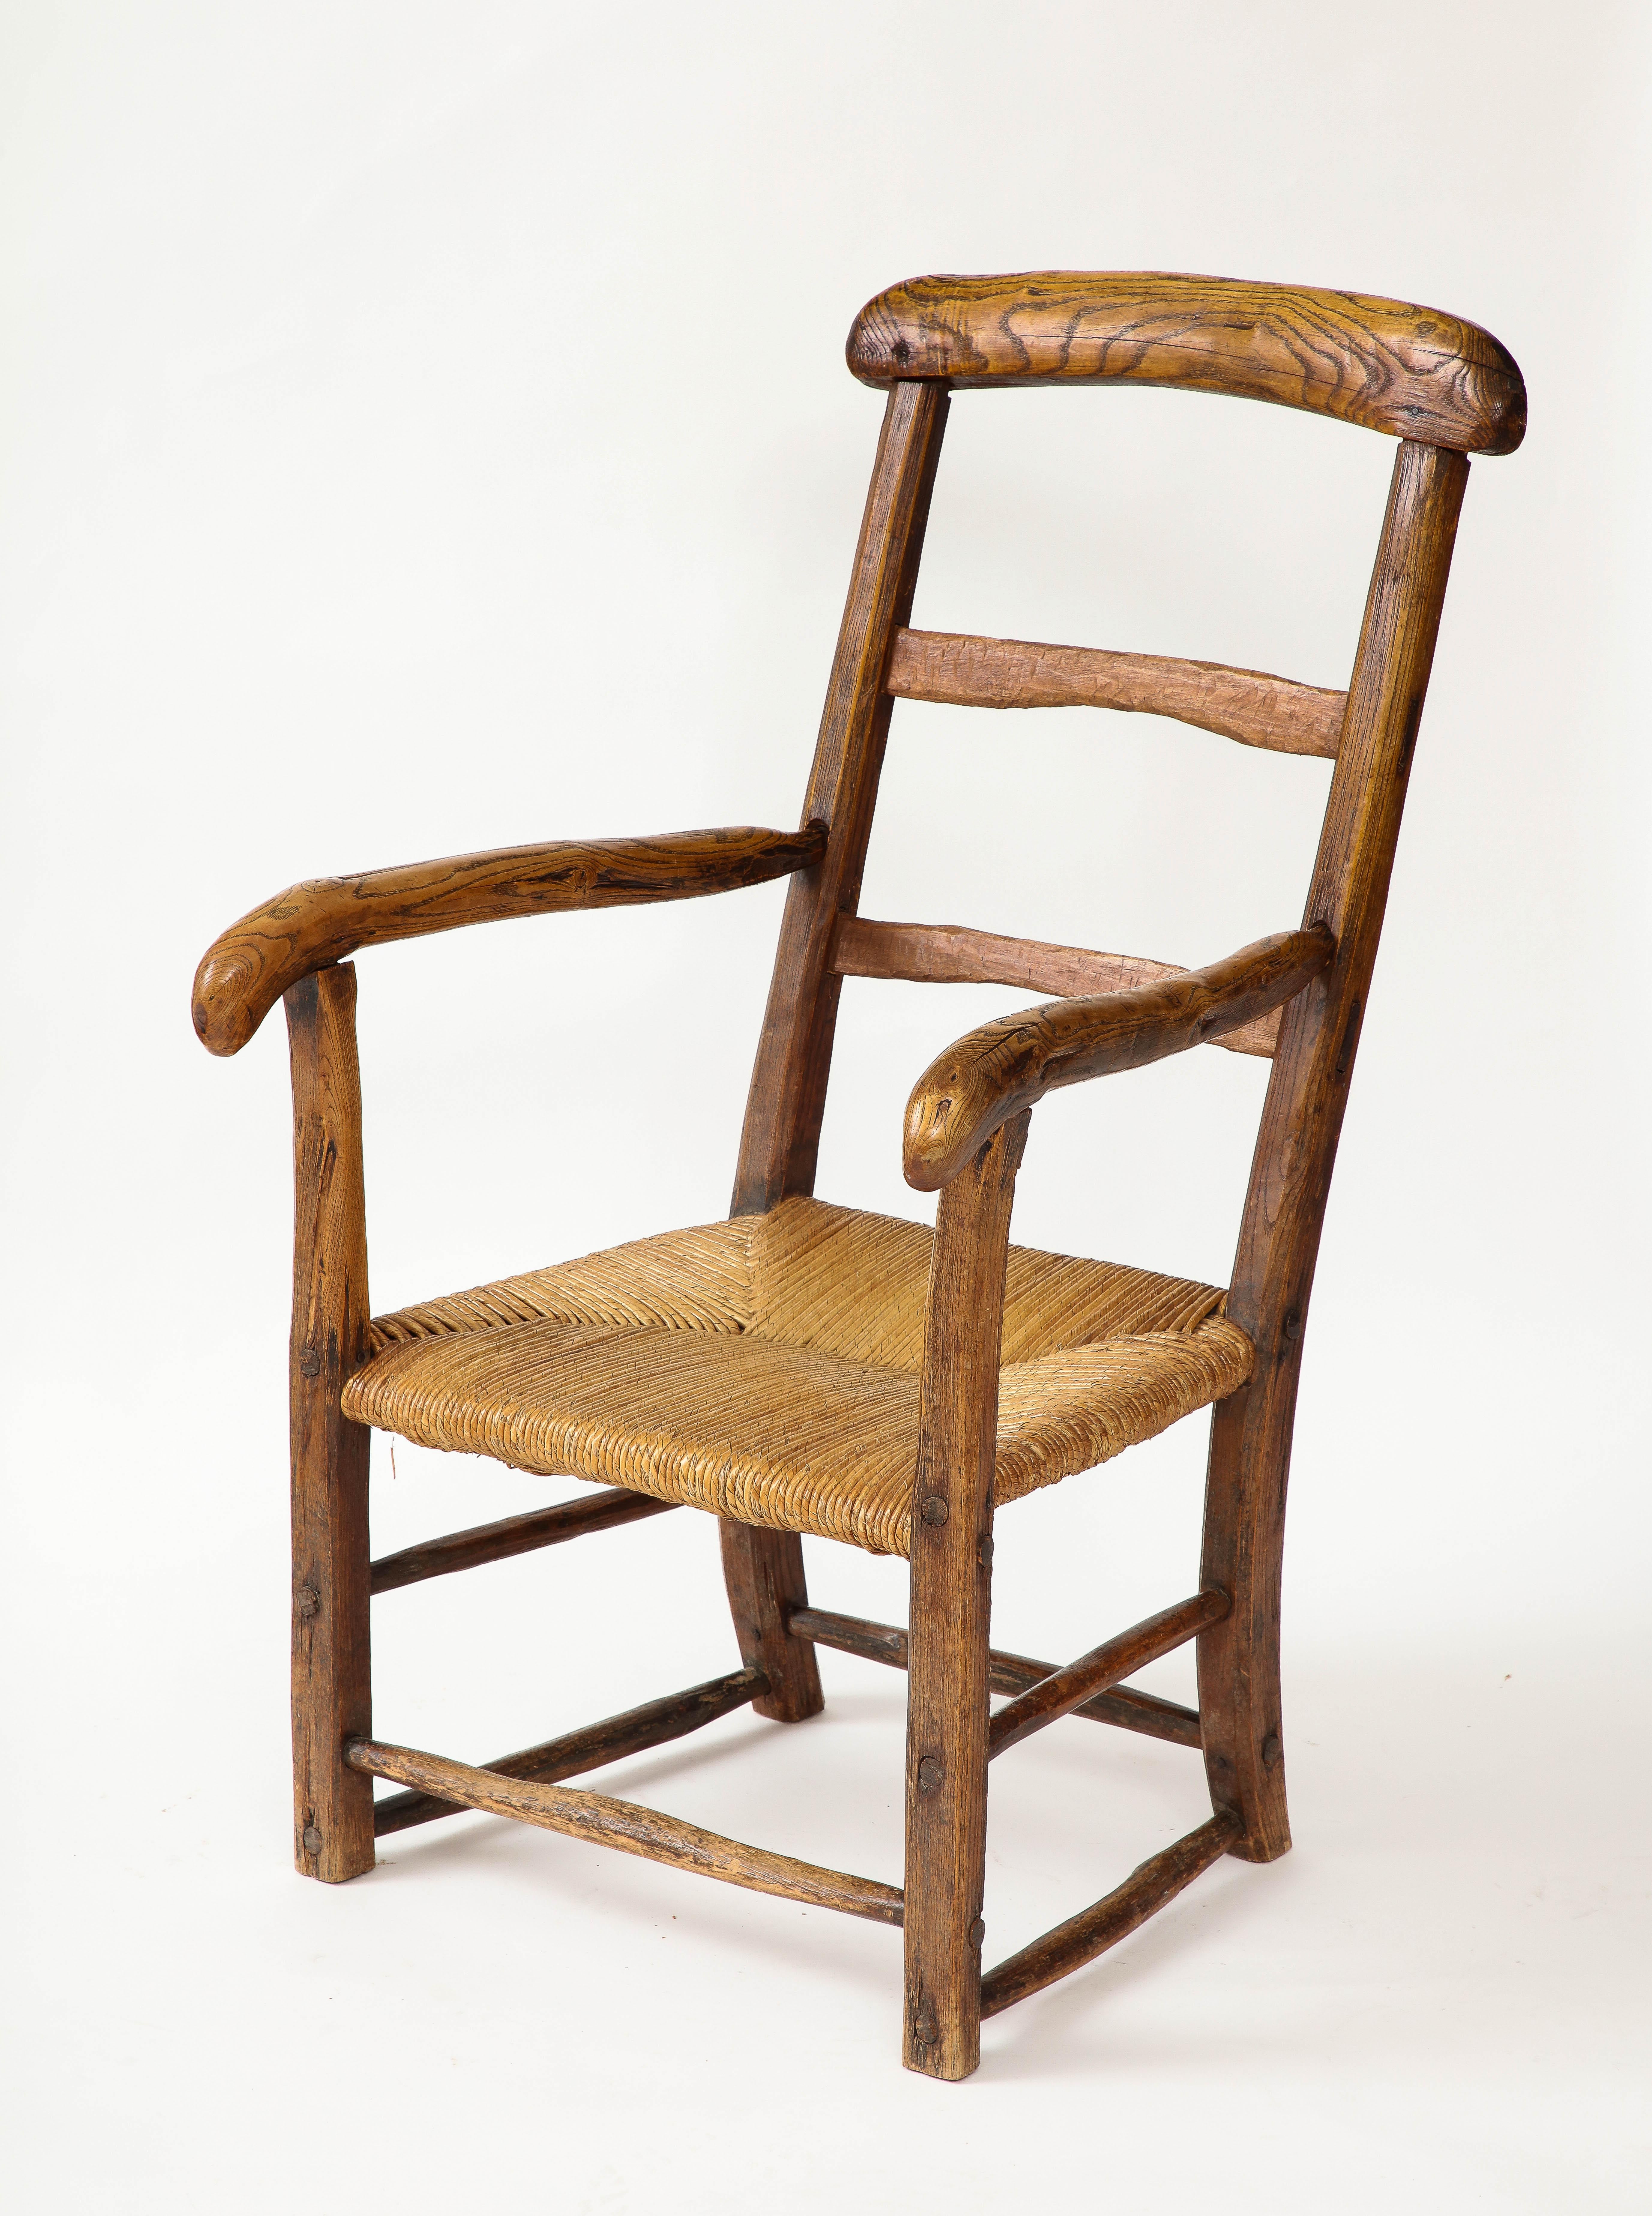 Chaise rustique à assise en chaume, faite à la main, France, région Rhône Alpes

Magnifique grain et patine

Hauteur du siège : 13-13.5 in.